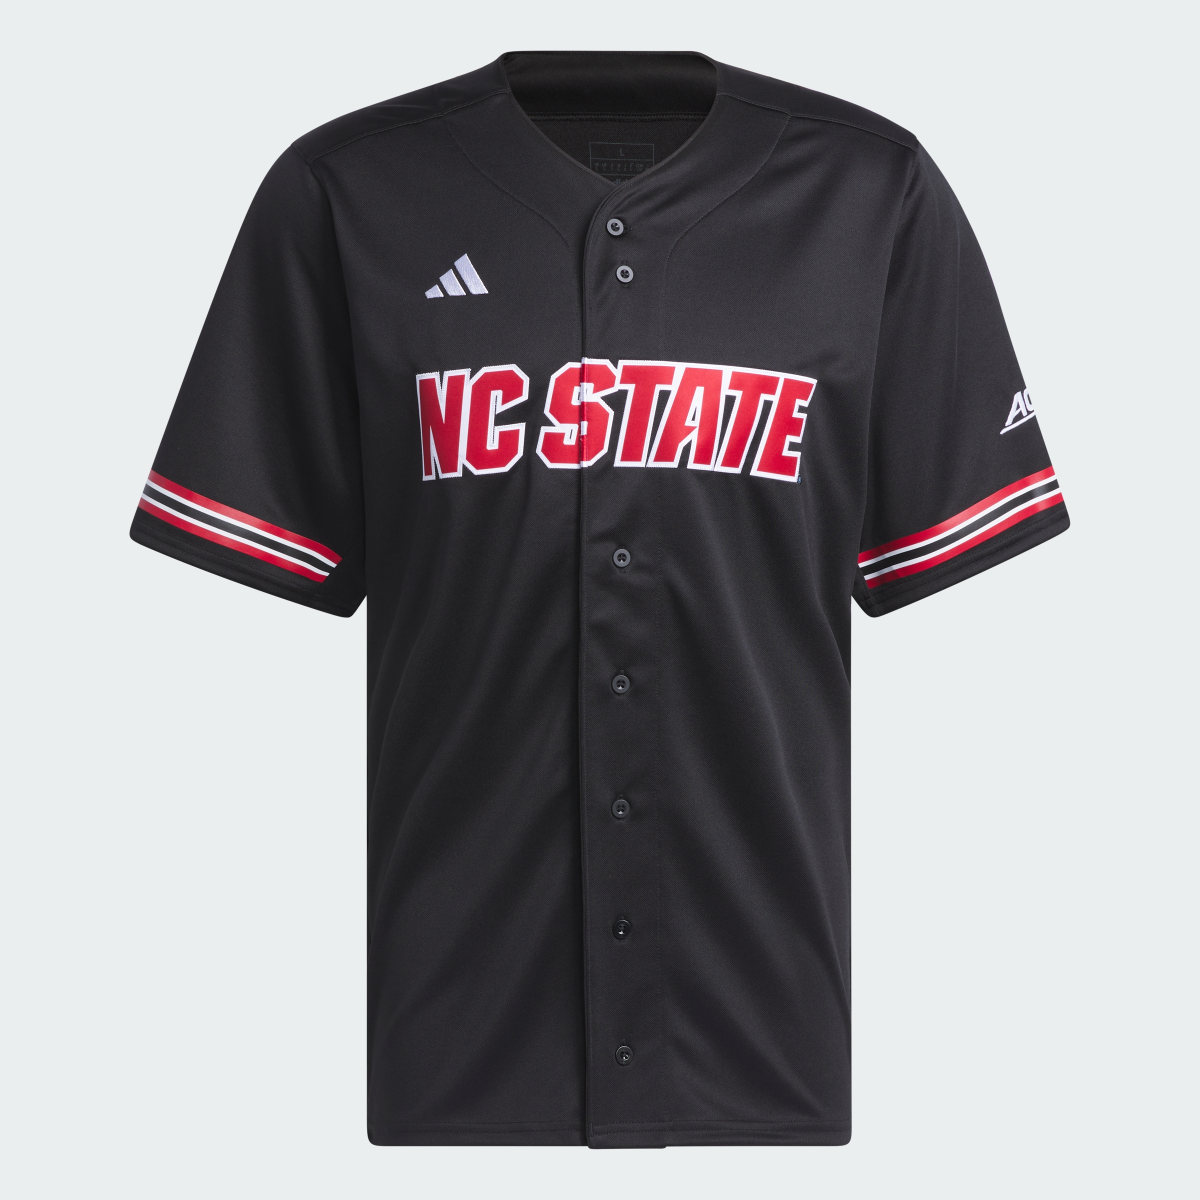 Adidas NC State Baseball Jersey. 5